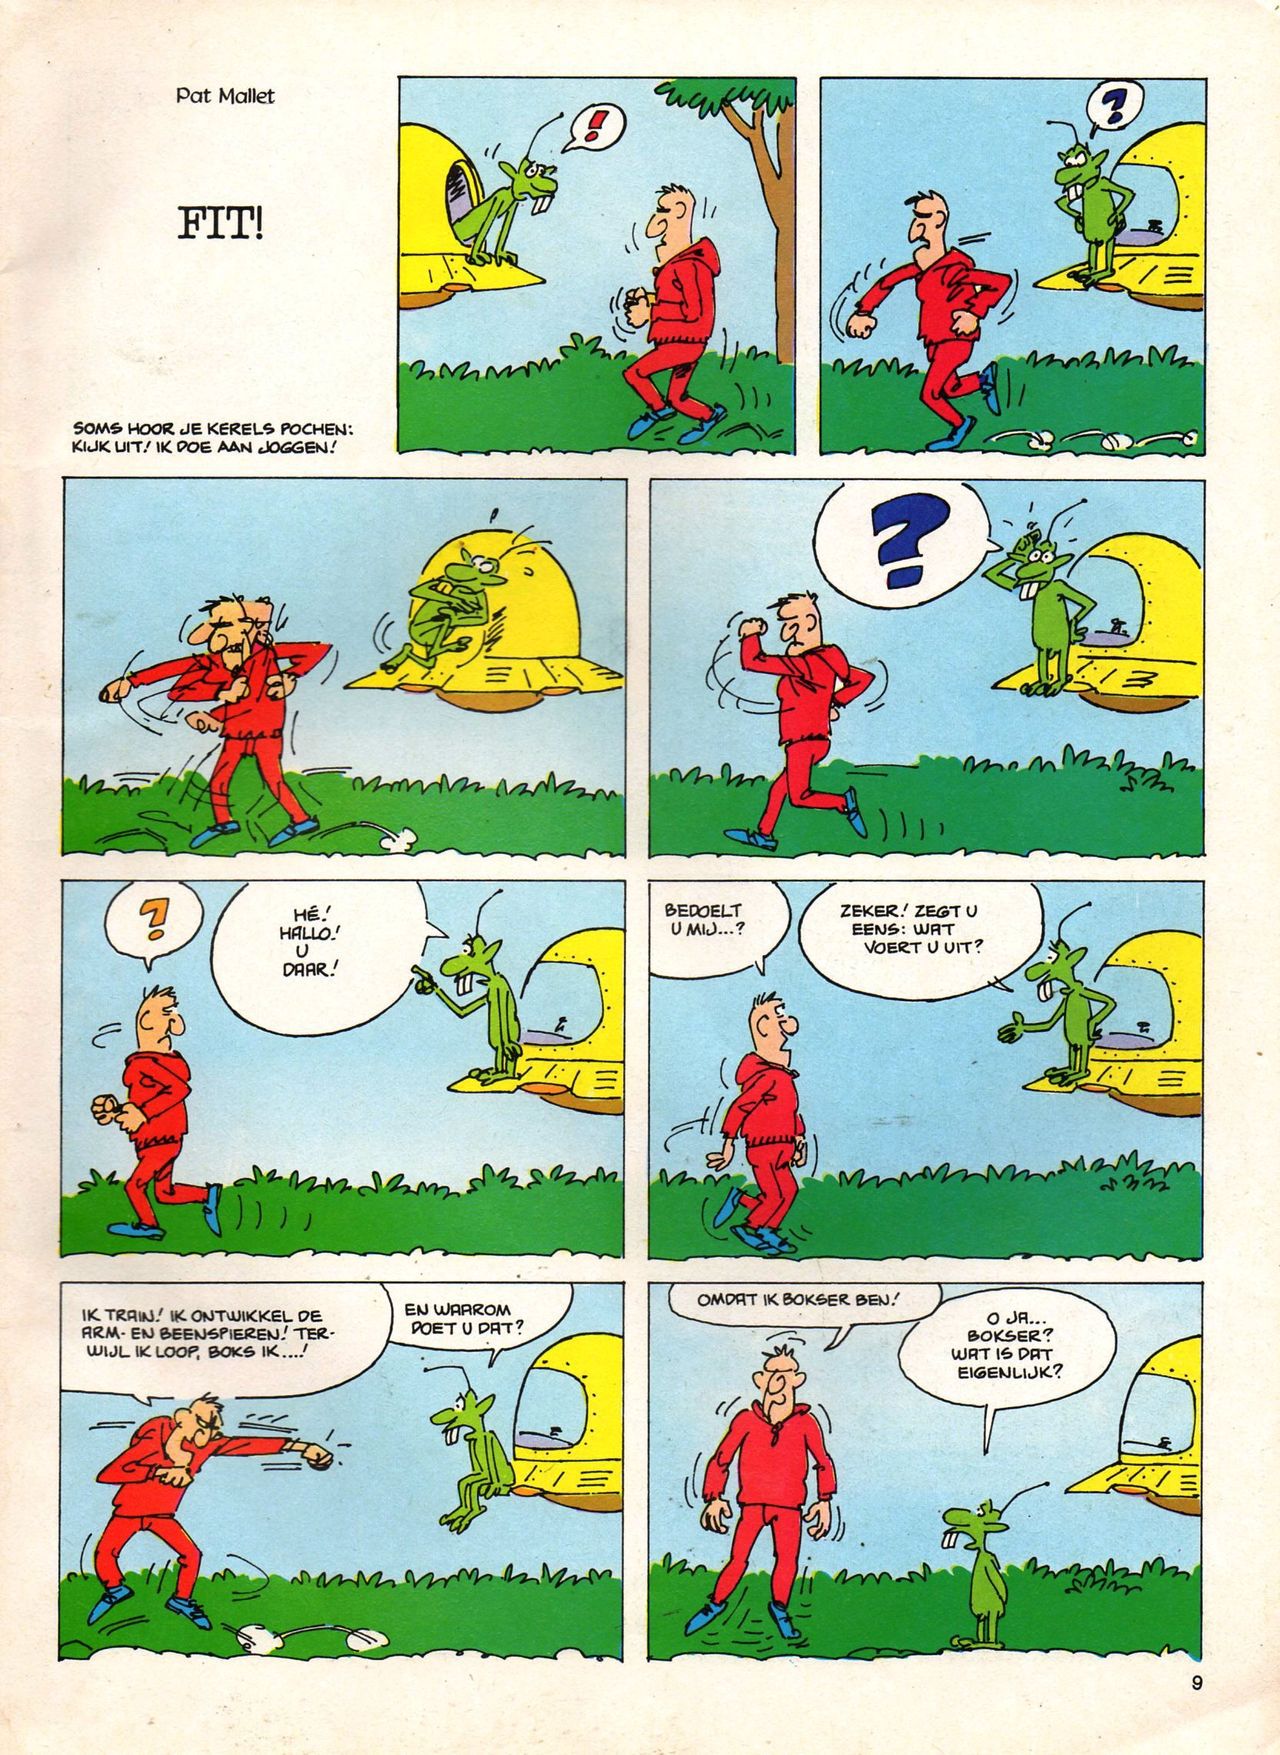 Het Is Groen En Het.. - 04 - Mag Ik Die Ballen.. OH, PARDON! (Dutch) Een oude humoristische serie van Pat Mallet 9